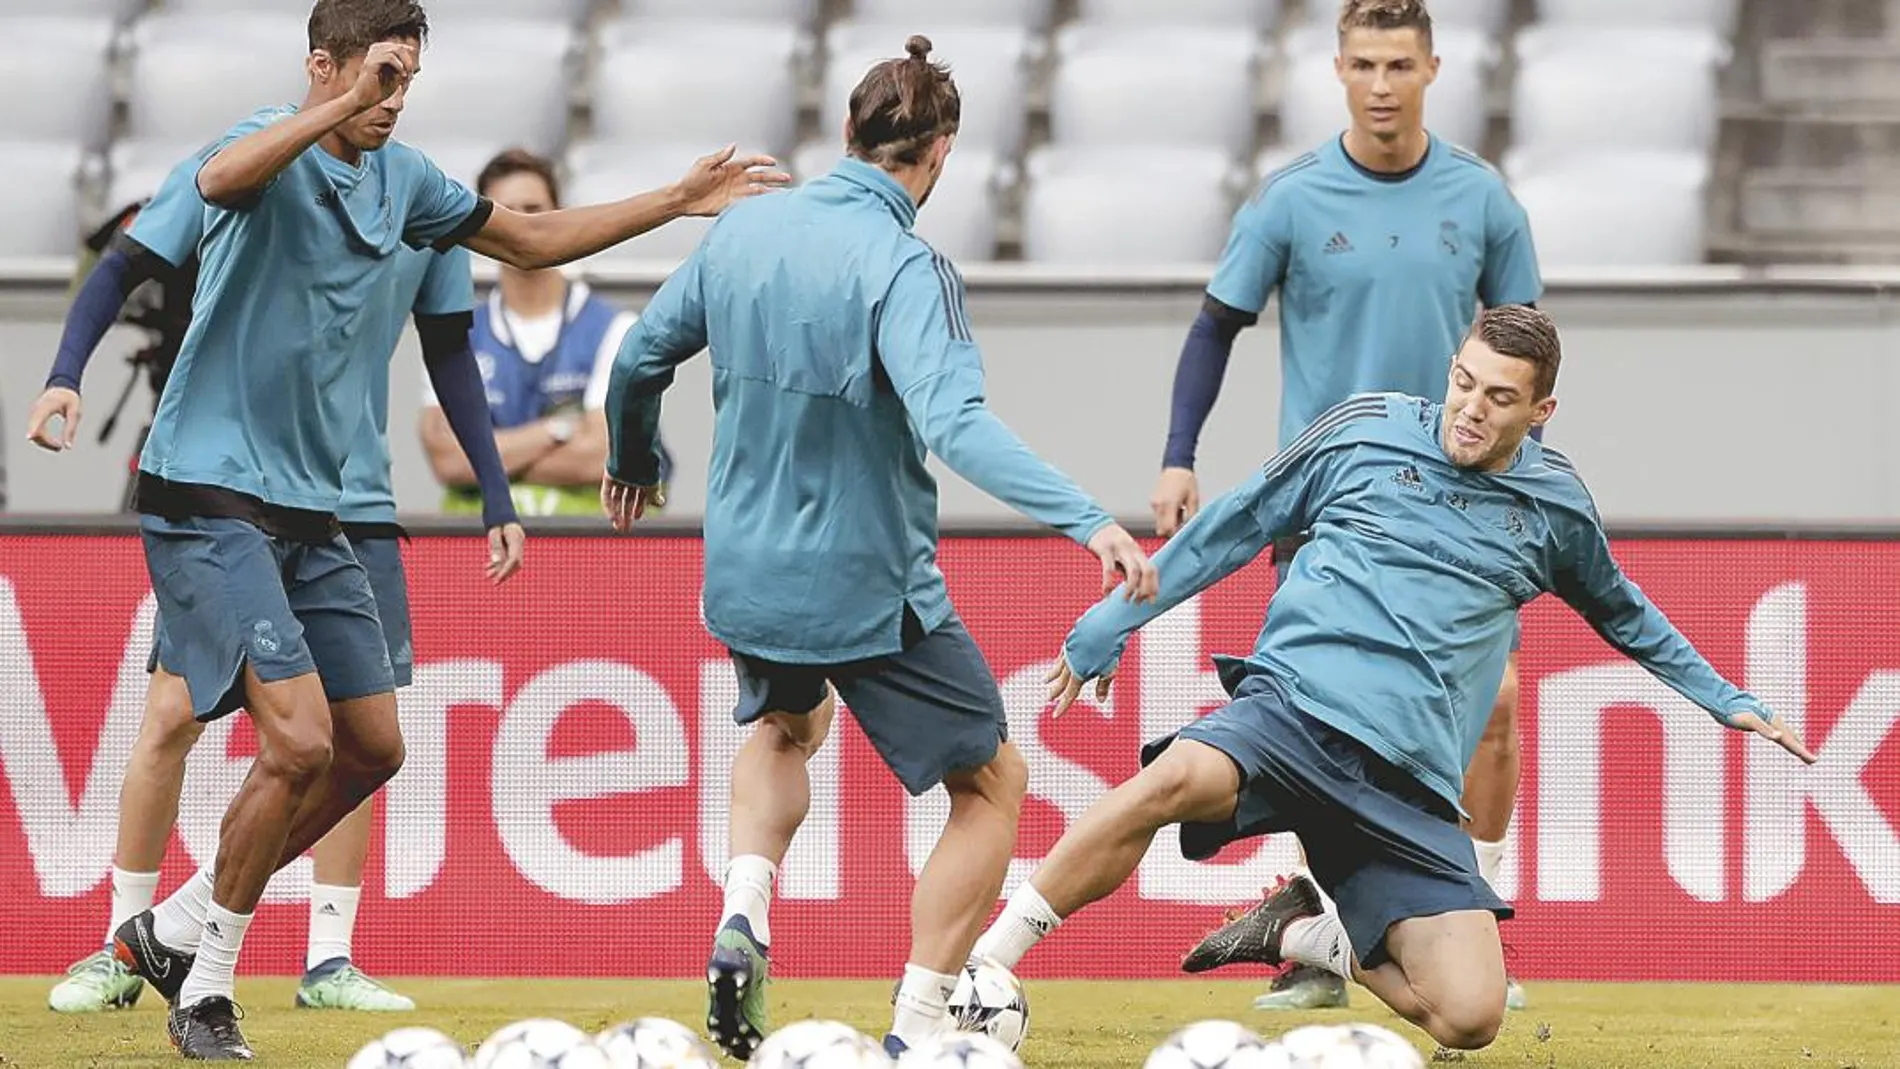 Último entrenamiento del Madrid, ayer en Alemania. Varane, Bale, Kovacic y Cristiano Ronaldo se preparan para el partido